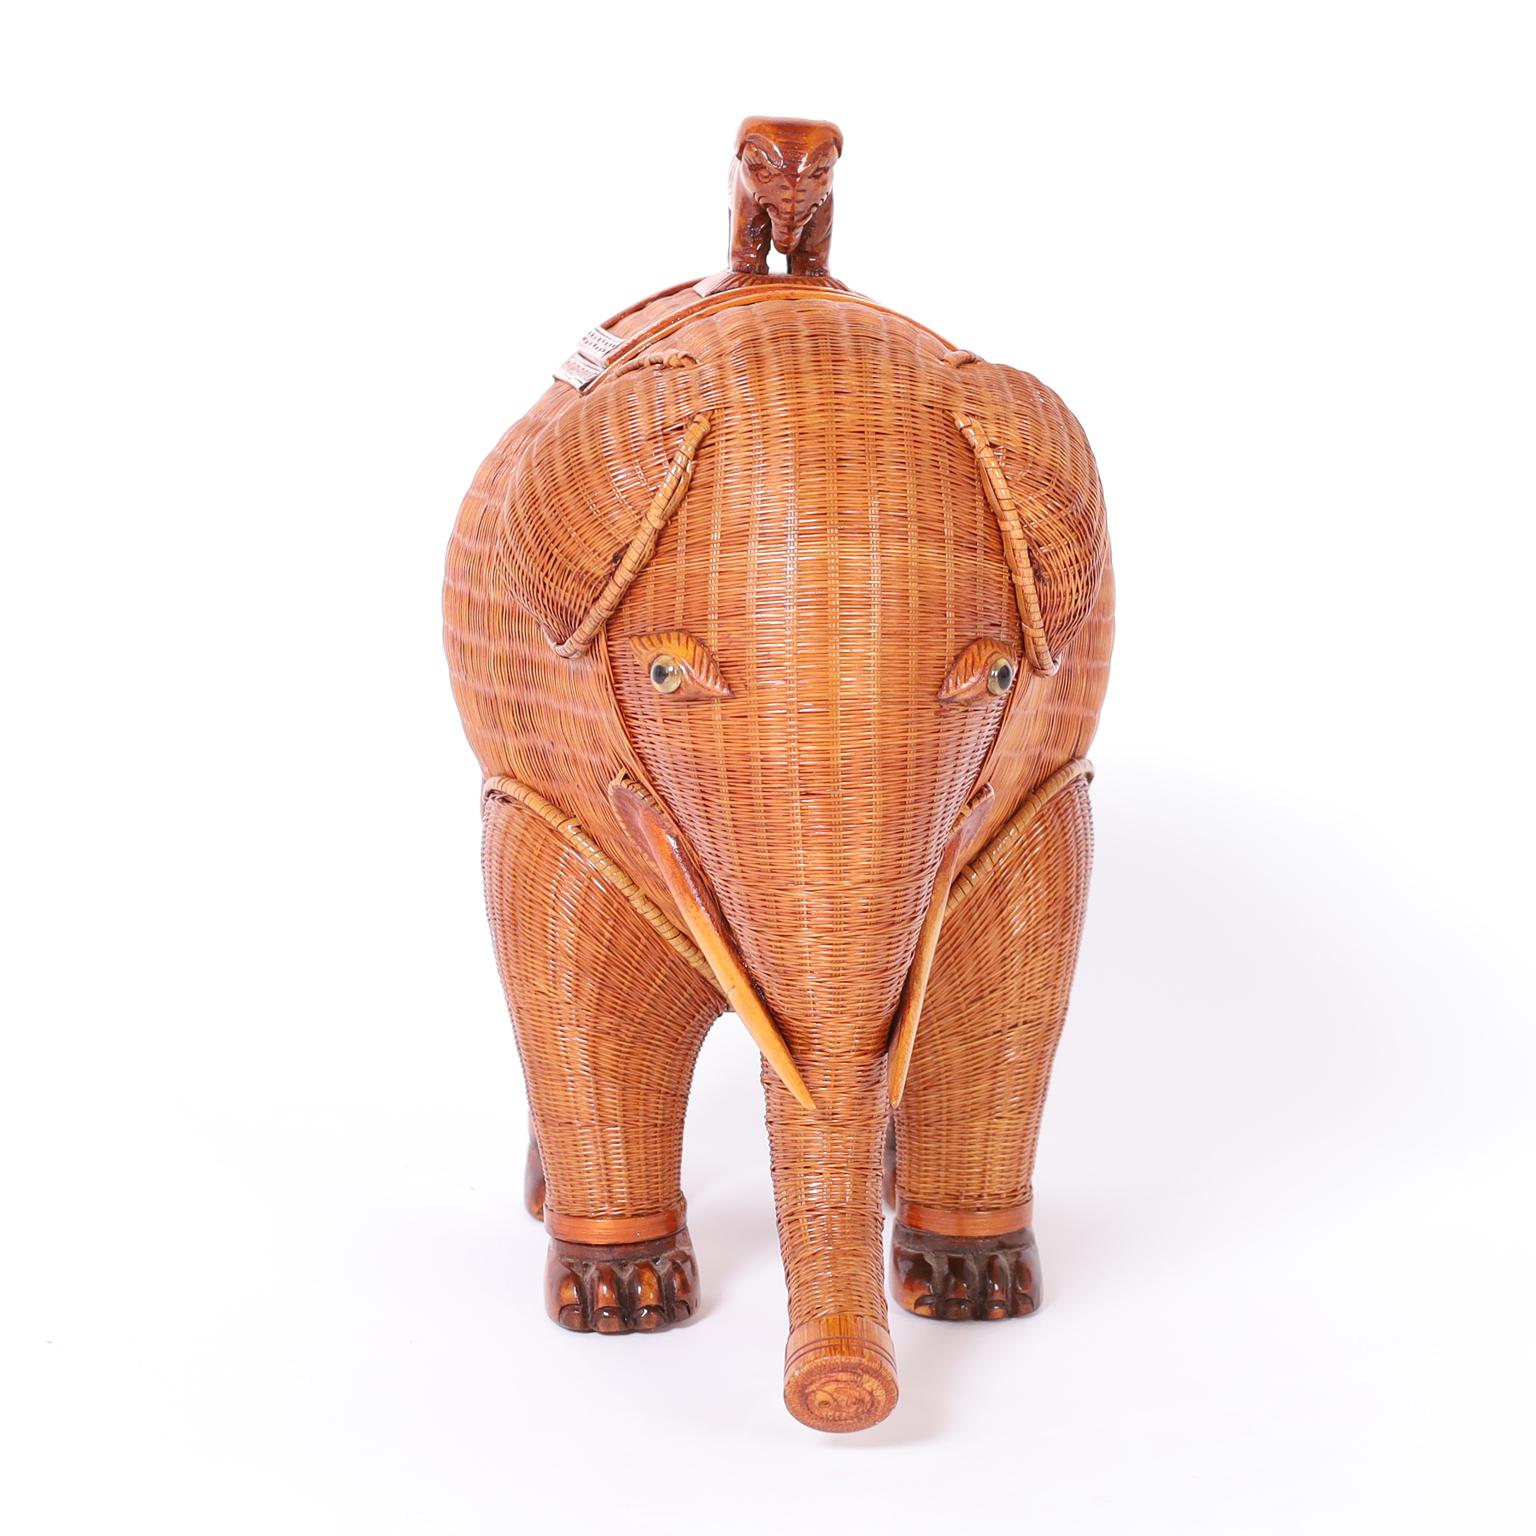 Chinesische Elefantenkiste aus Weidengeflecht mit geschnitzten Holzstoßzähnen, Füßen und Deckelgriff. Aus der bekannten Shanghai-Sammlung.